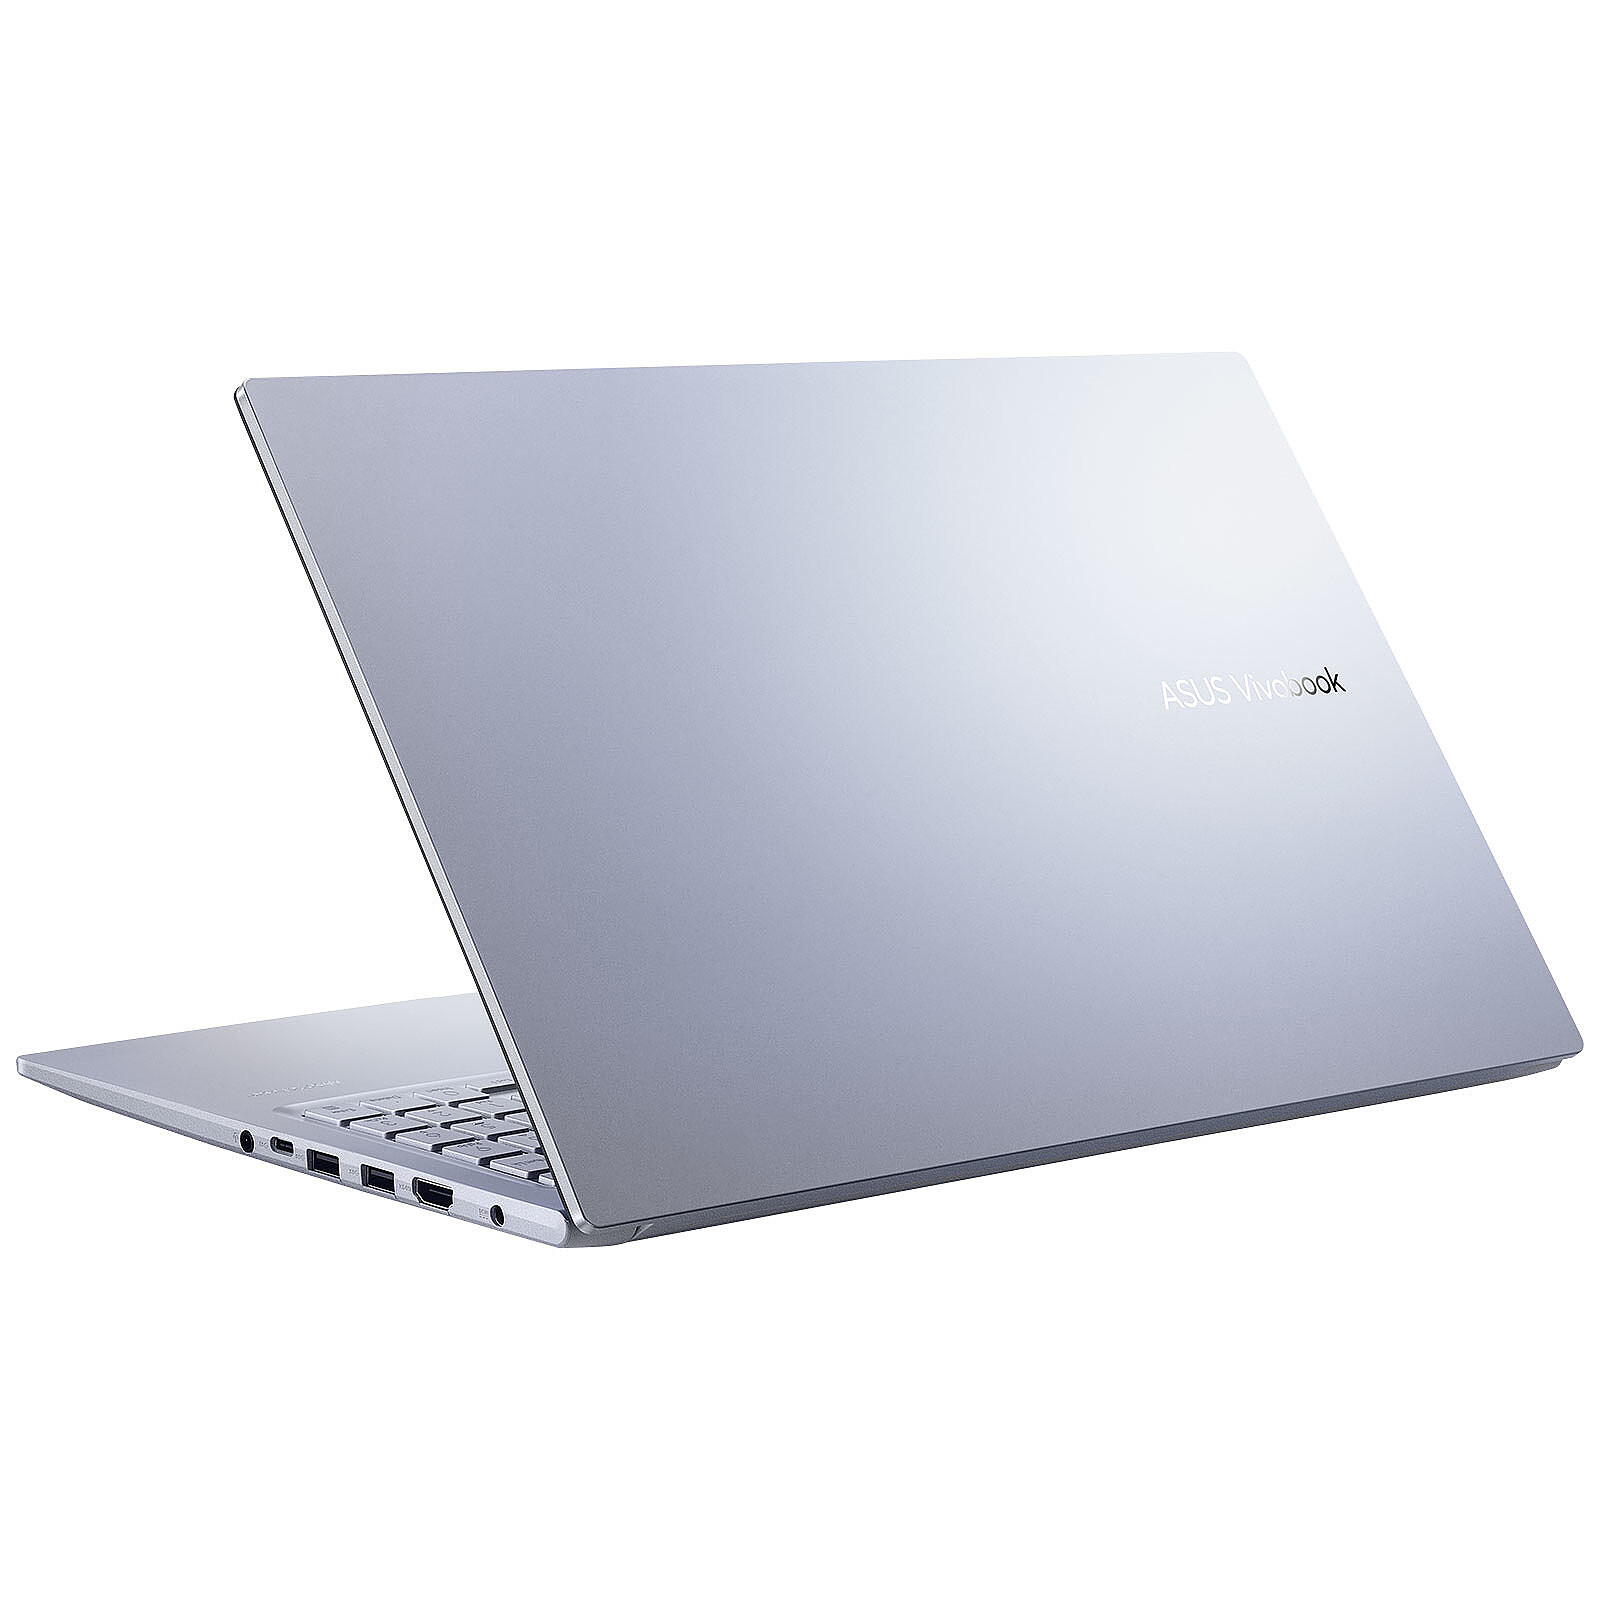 Le PC portable ASUS ZenBook 14 pouces à 699 euros